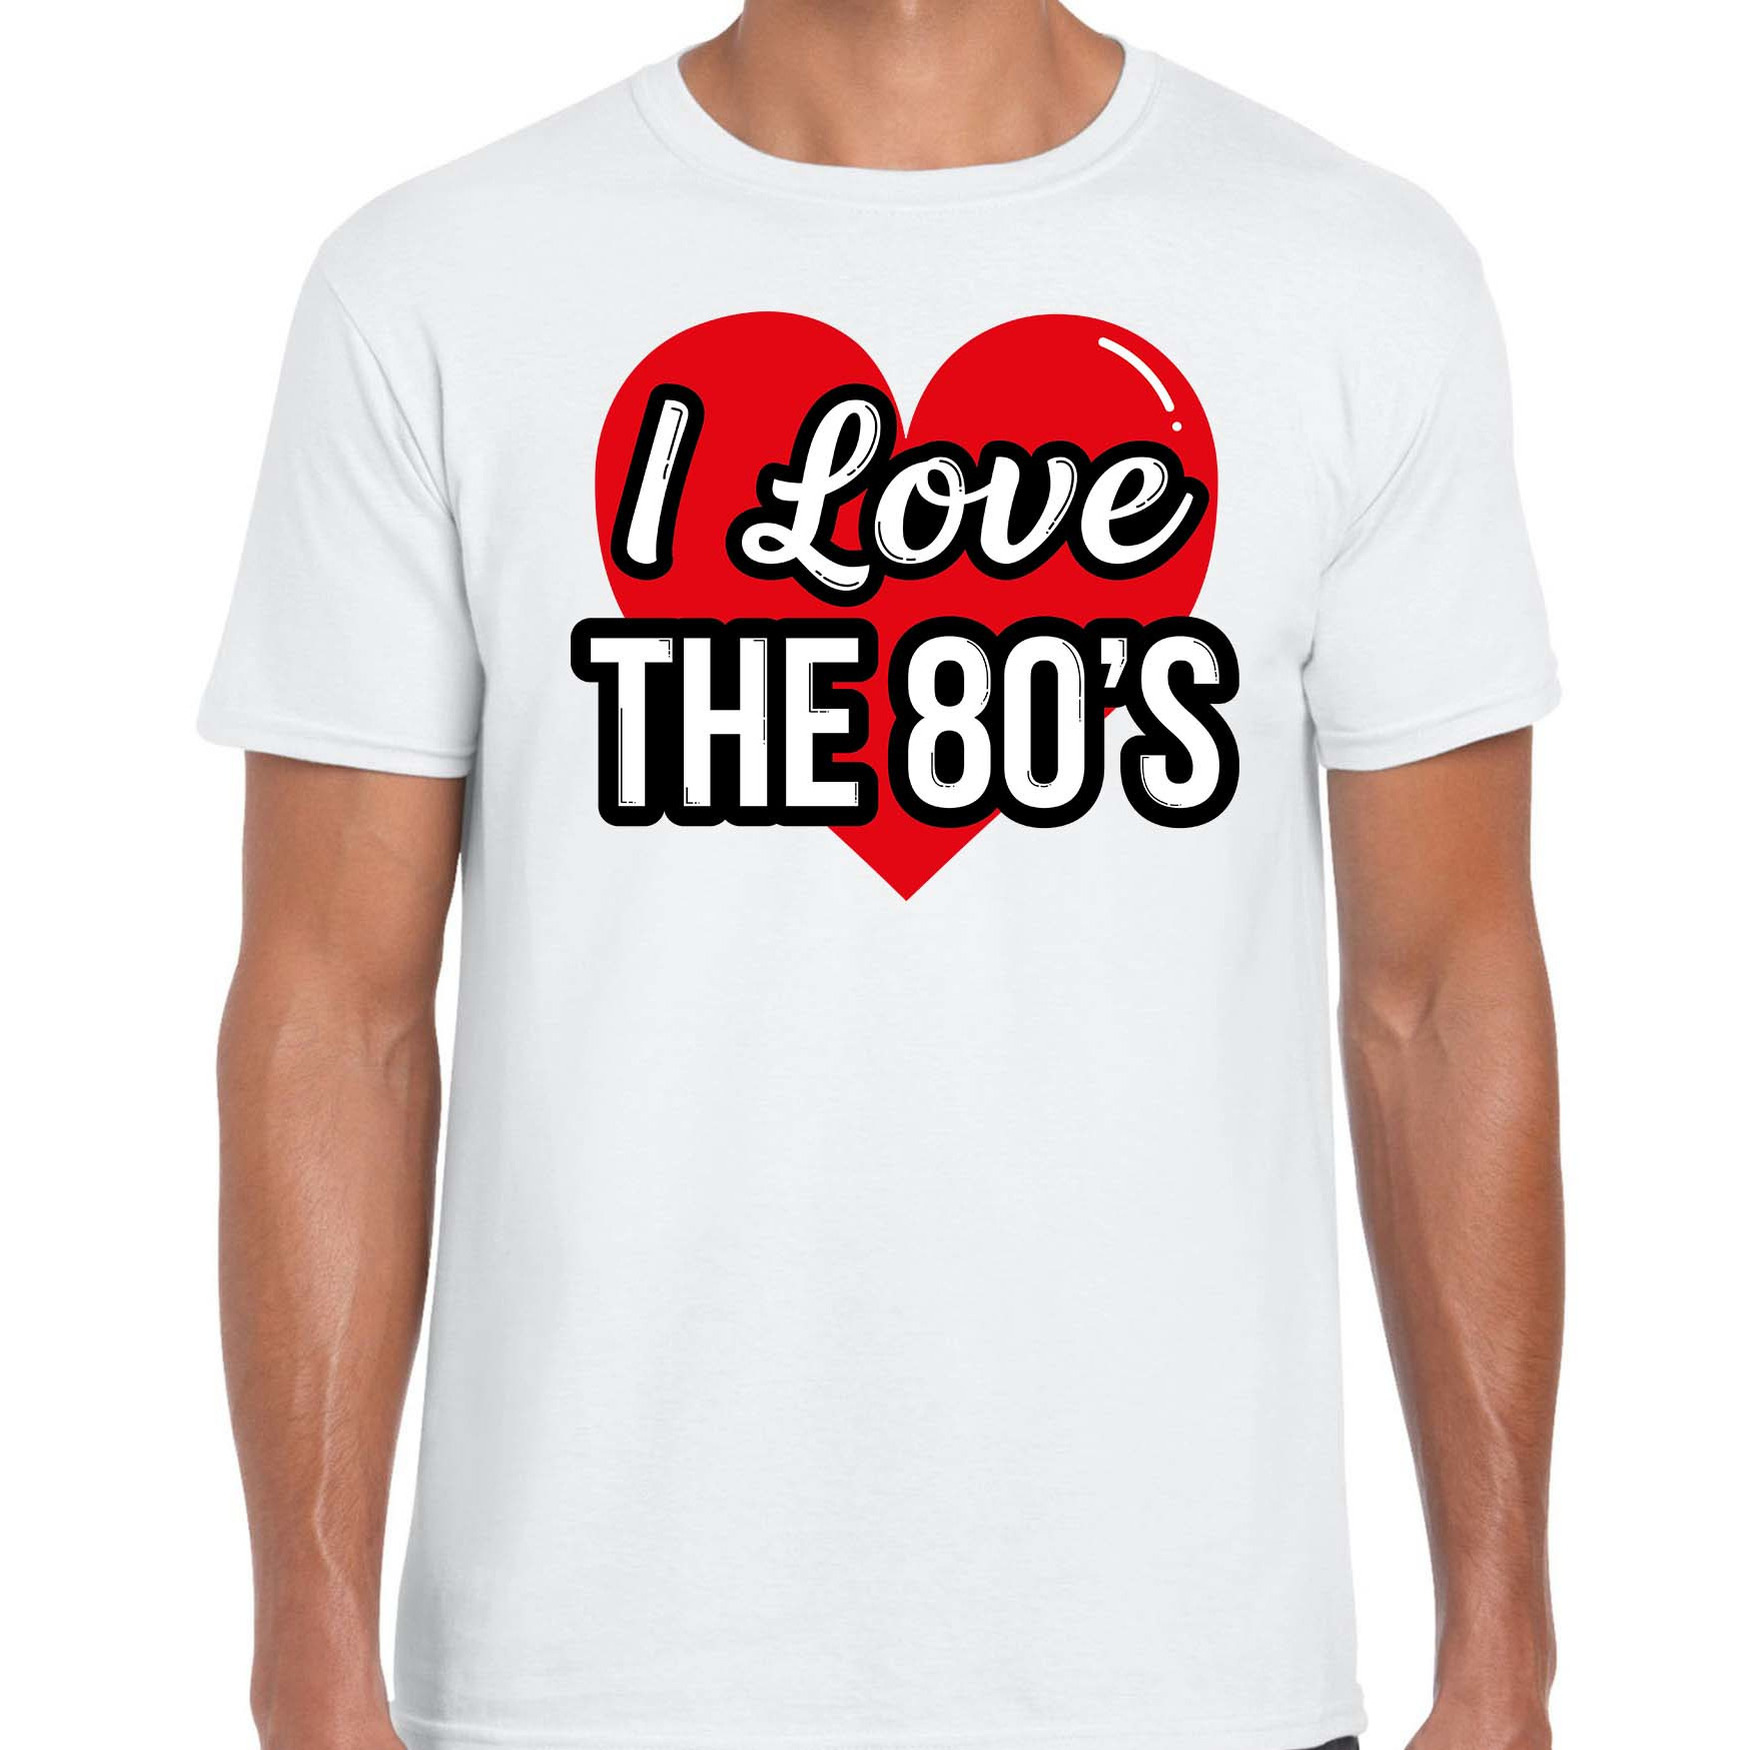 I love 80s verkleed t-shirt wit voor heren 80s party verkleed outfit